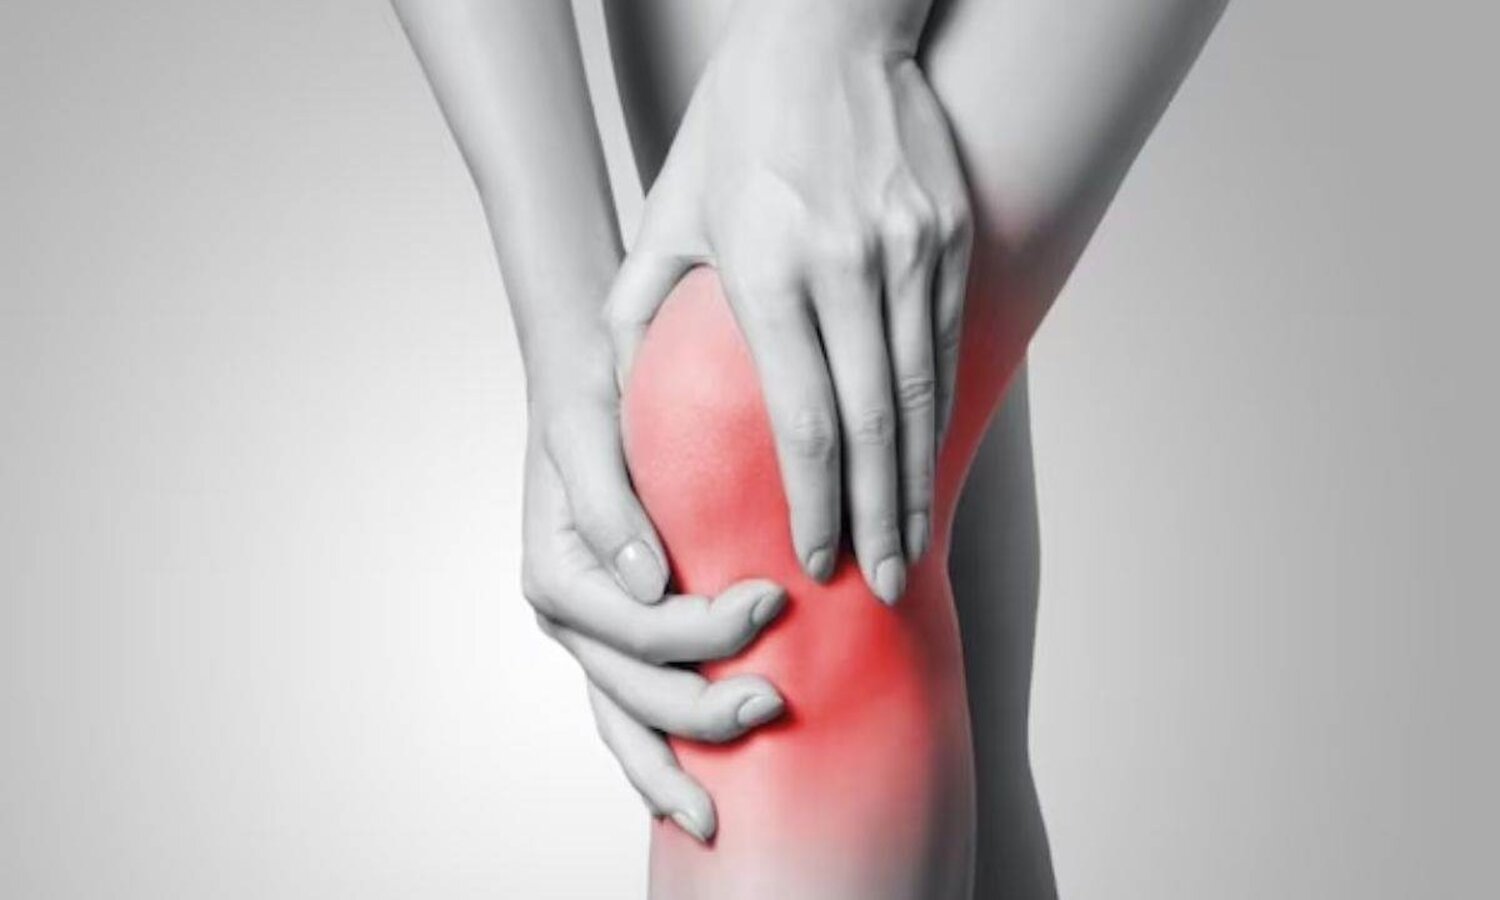 Knee Pain: घुटनों के दर्द को भगाने के लिए खाएं ये सुपरफूड्स, रहेंगे हमेशा हेल्दी